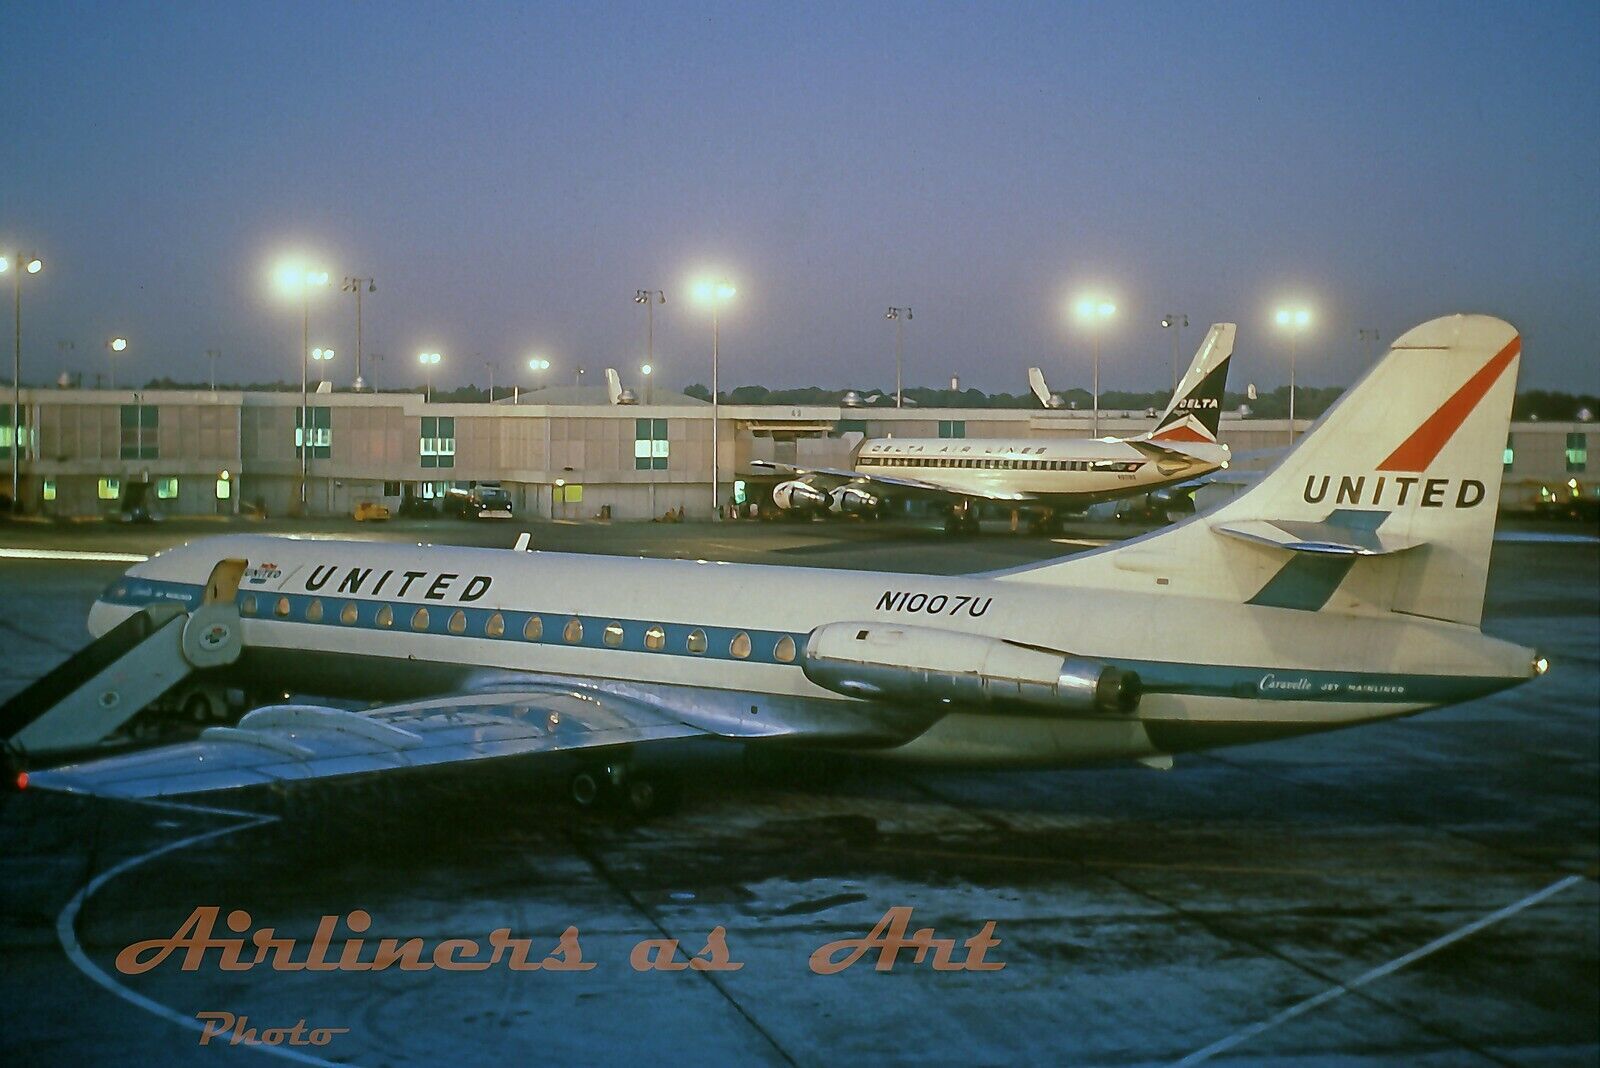 United Airlines SE-210 Caravelle VIR N1007U in 1968 8x12 Inch Color Print